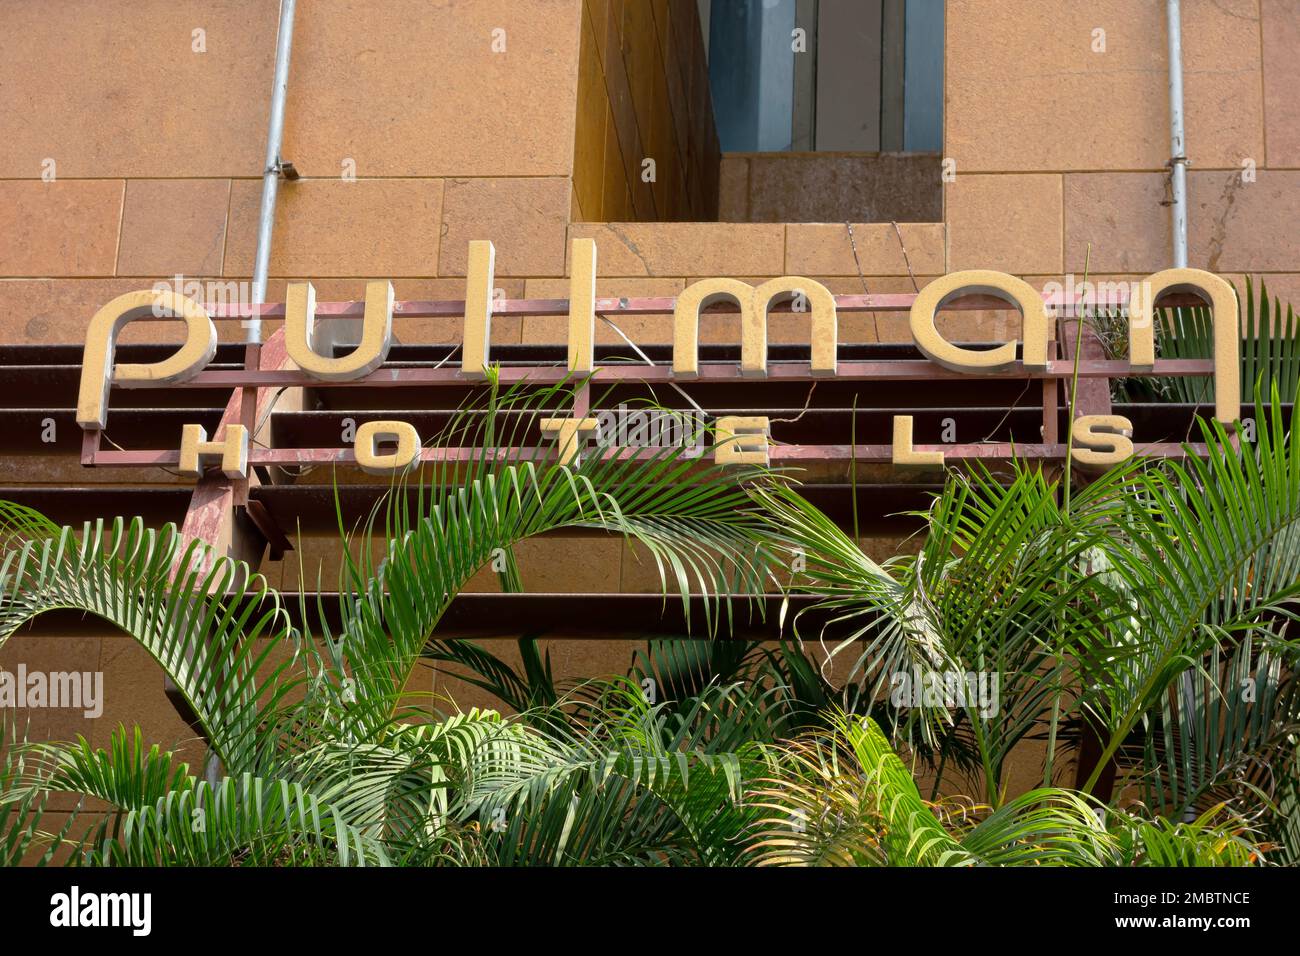 Sanya, Chine - 10 avril 2015: Hôtels et complexes hôteliers Pullman à Sanya, Chine. Pullman Hotels and Resorts est une marque d'hôtel haut de gamme multinationale française Banque D'Images